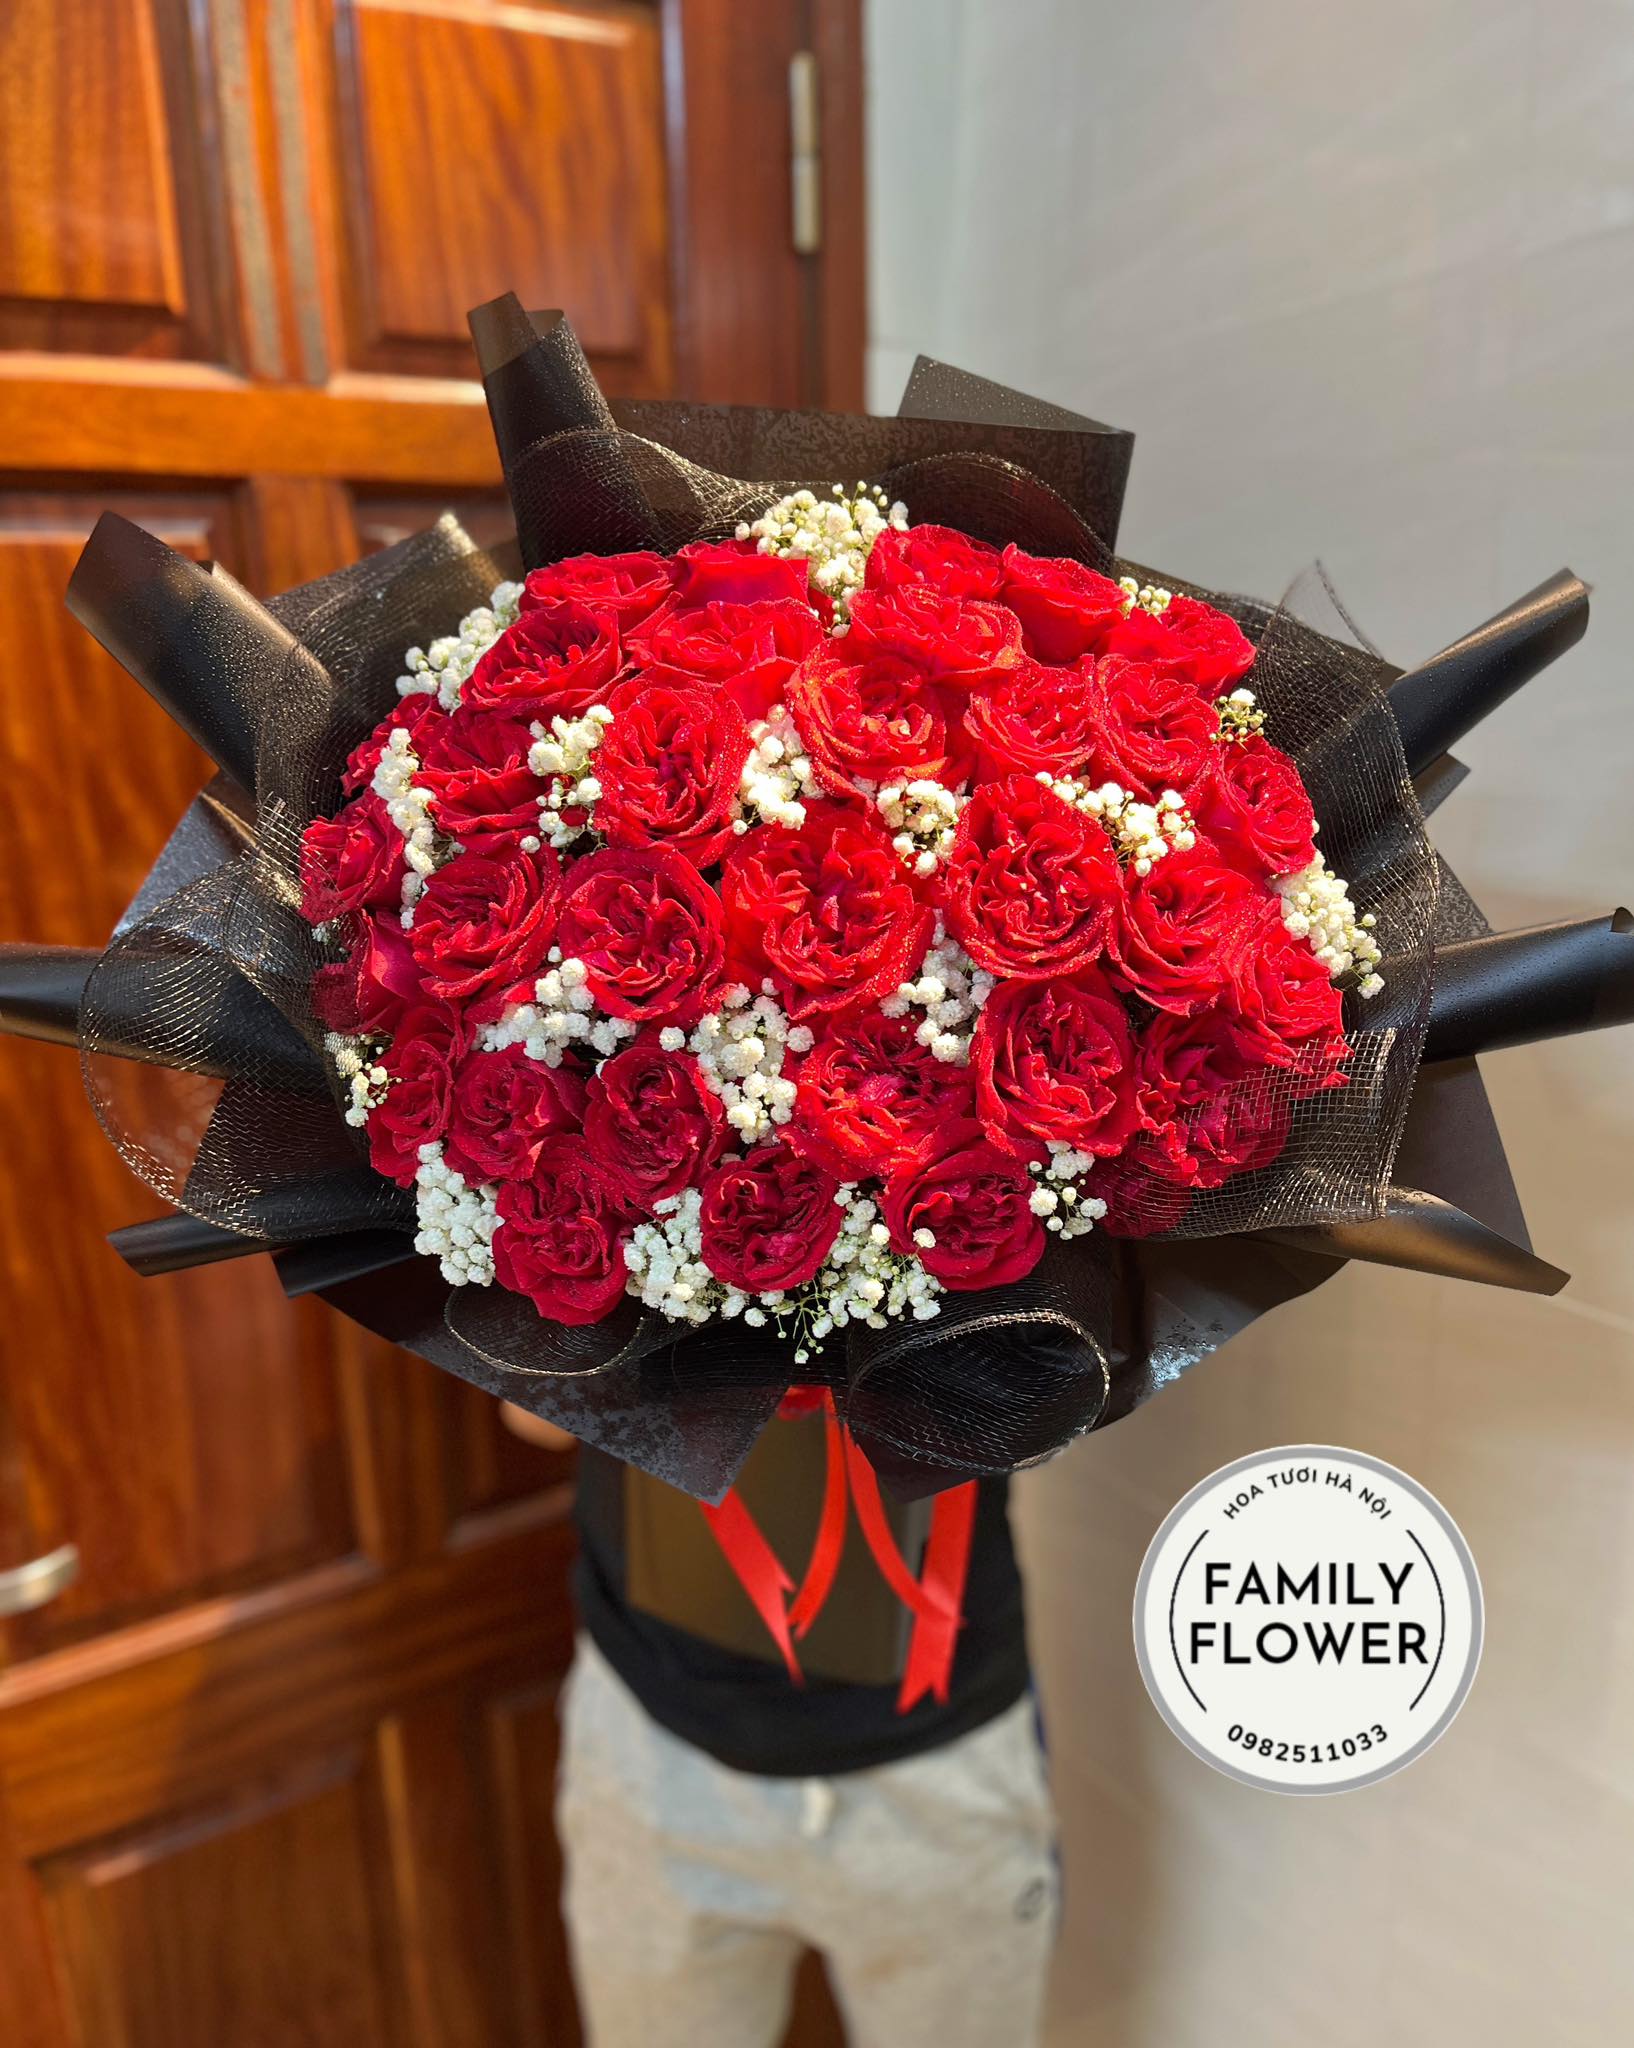 Bó hoa hồng đỏ tặng vợ ở quận Hoàn Kiếm , Đống Đa Hà Nội nhân dịp 20 tháng 10, hoa tươi Hà Nội